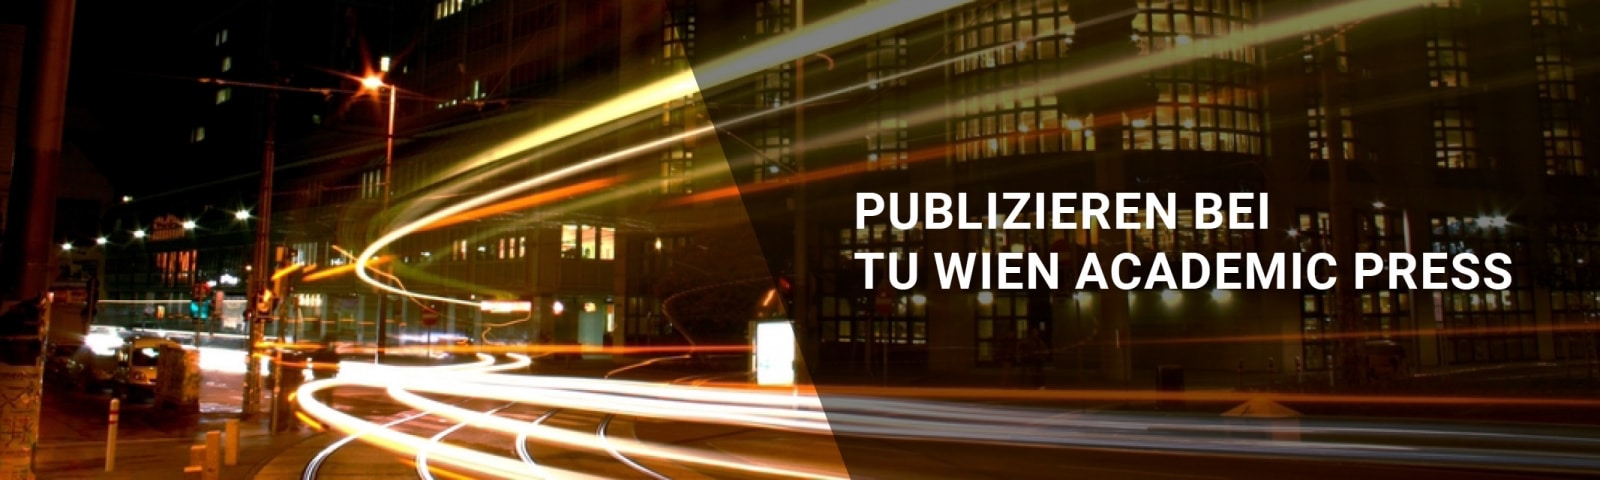 Lichtspuren eines schnellen Fahrzeugs, dazu die Schrift "Publizieren bei TU Wien Academic Press"